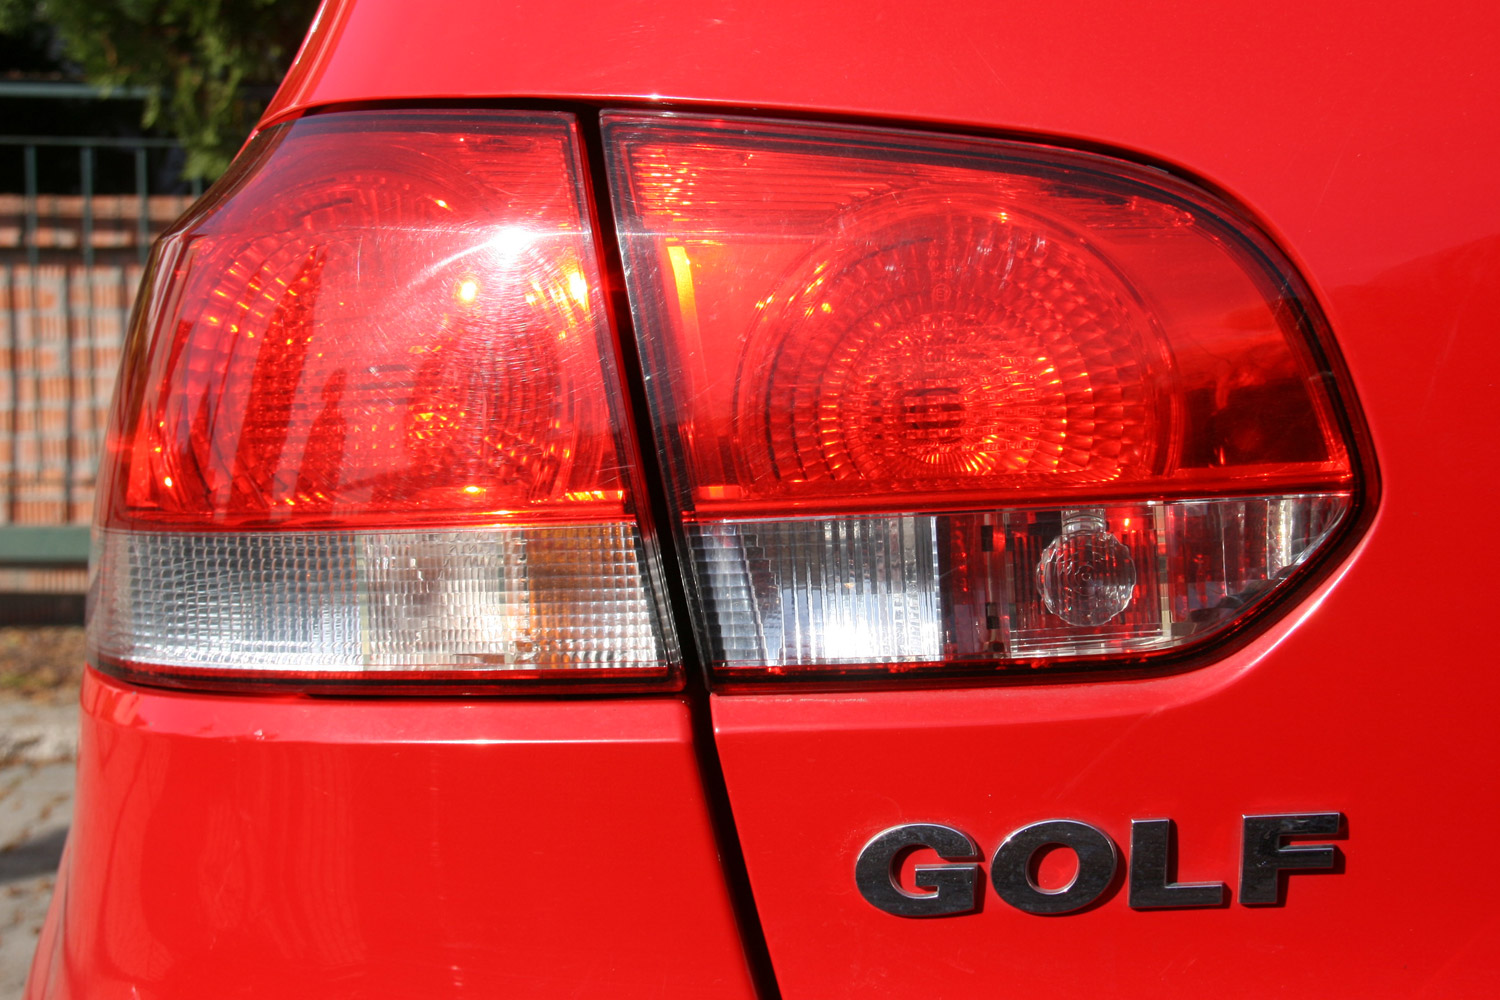 Használt autó: kockázatos Volkswagen Golfot venni? 40